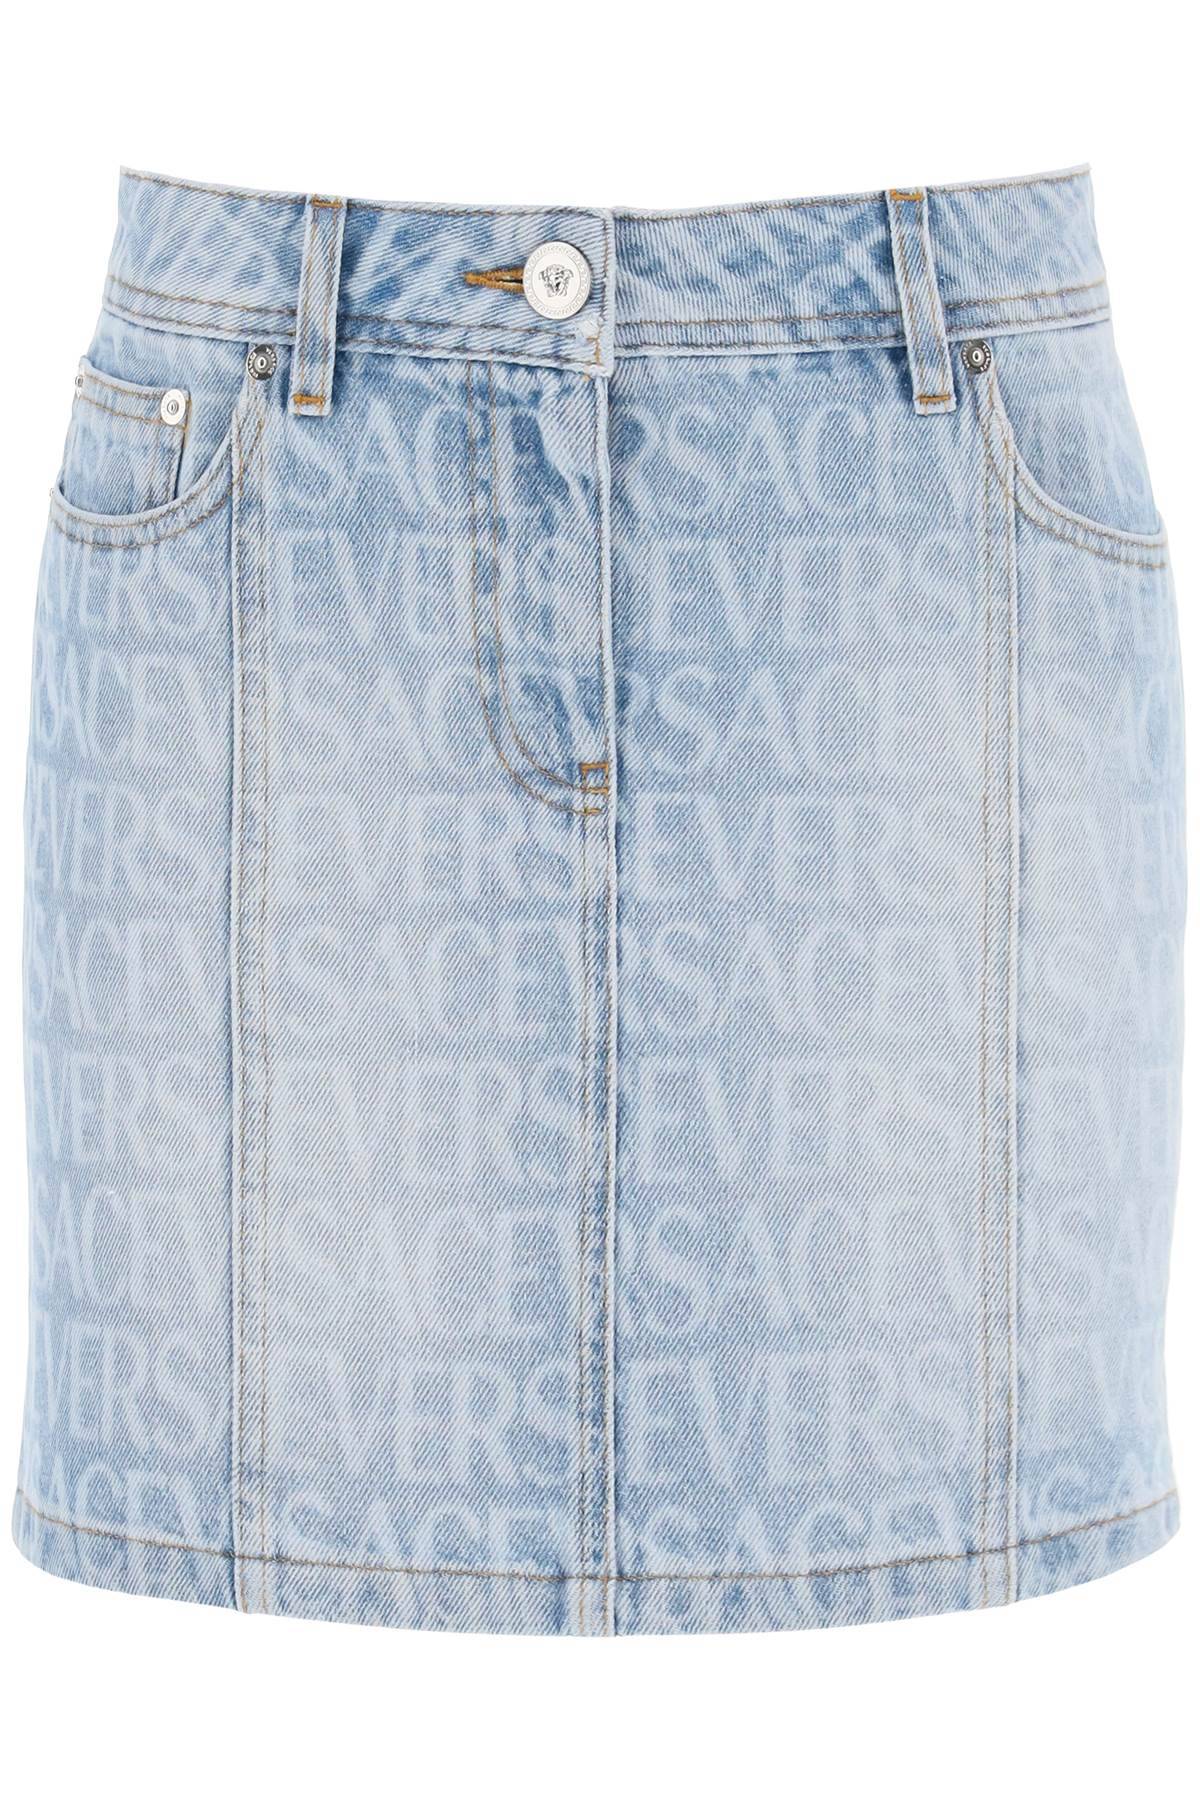 Versace VERSACE monogram denim mini skirt